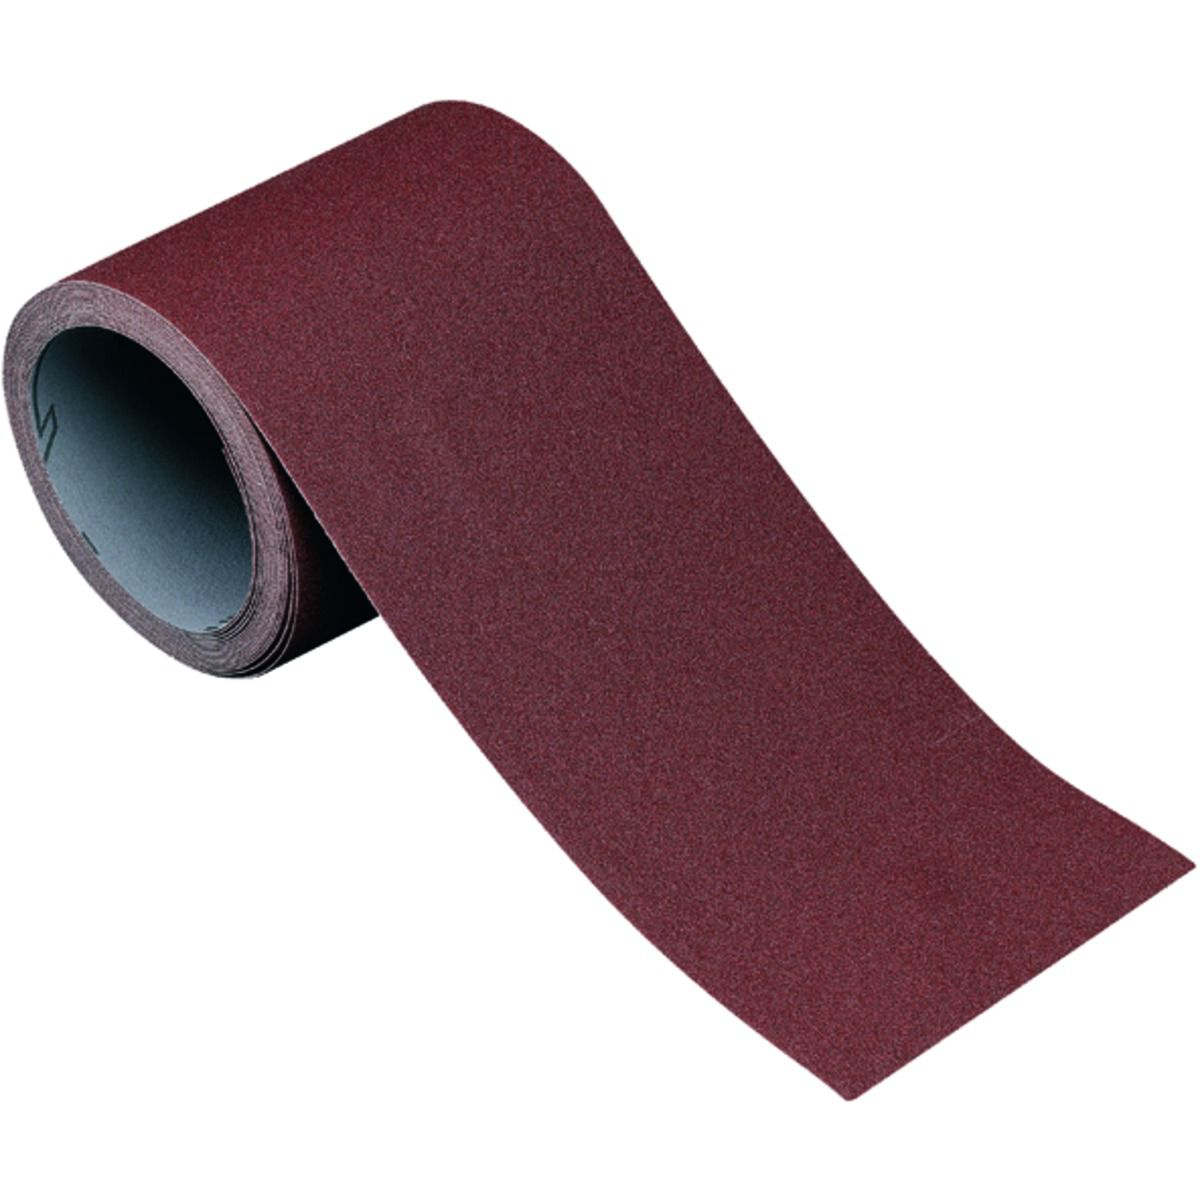 Image of Wickes Aluminium Oxide Flexible Abrasive Fine Sandpaper Roll - 5m